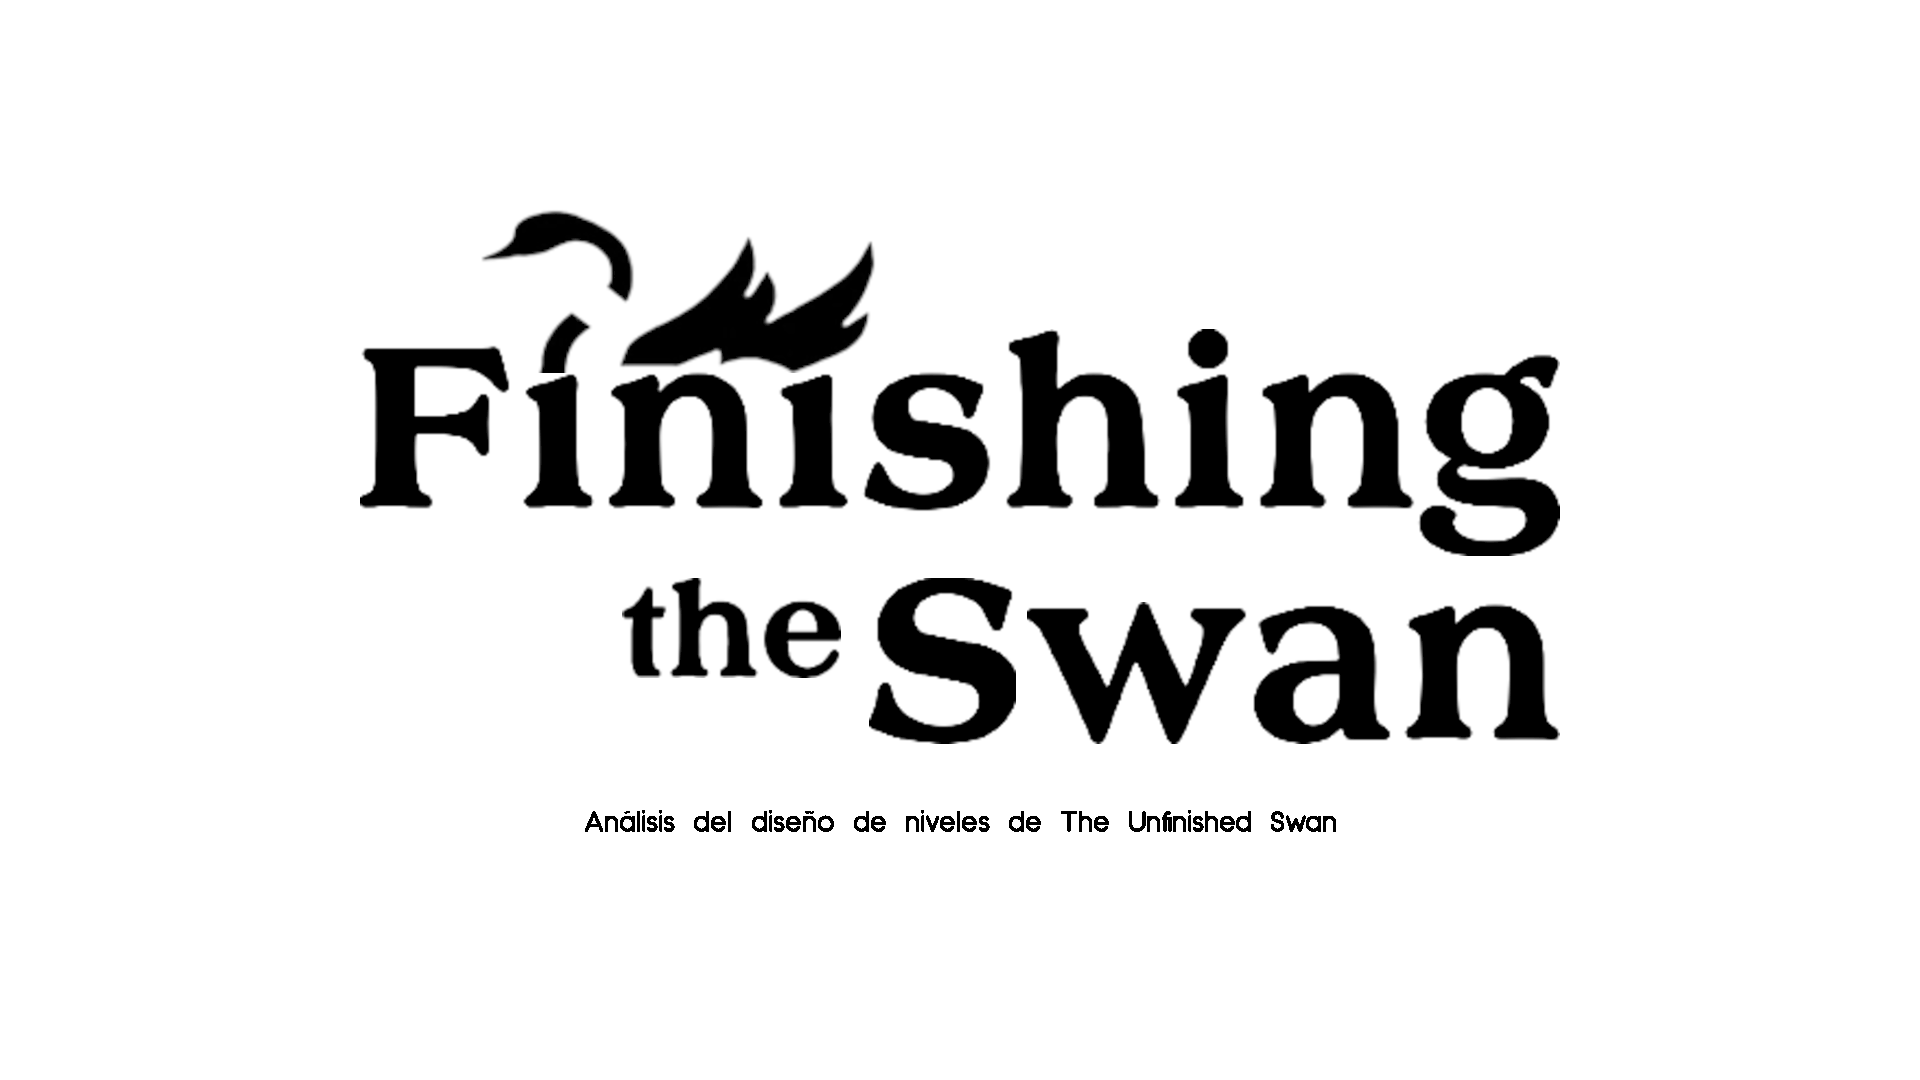 Imagen con el título de la práctica: Finishing the Swan - Análisis del diseño de niveles de The Unfinished Swan